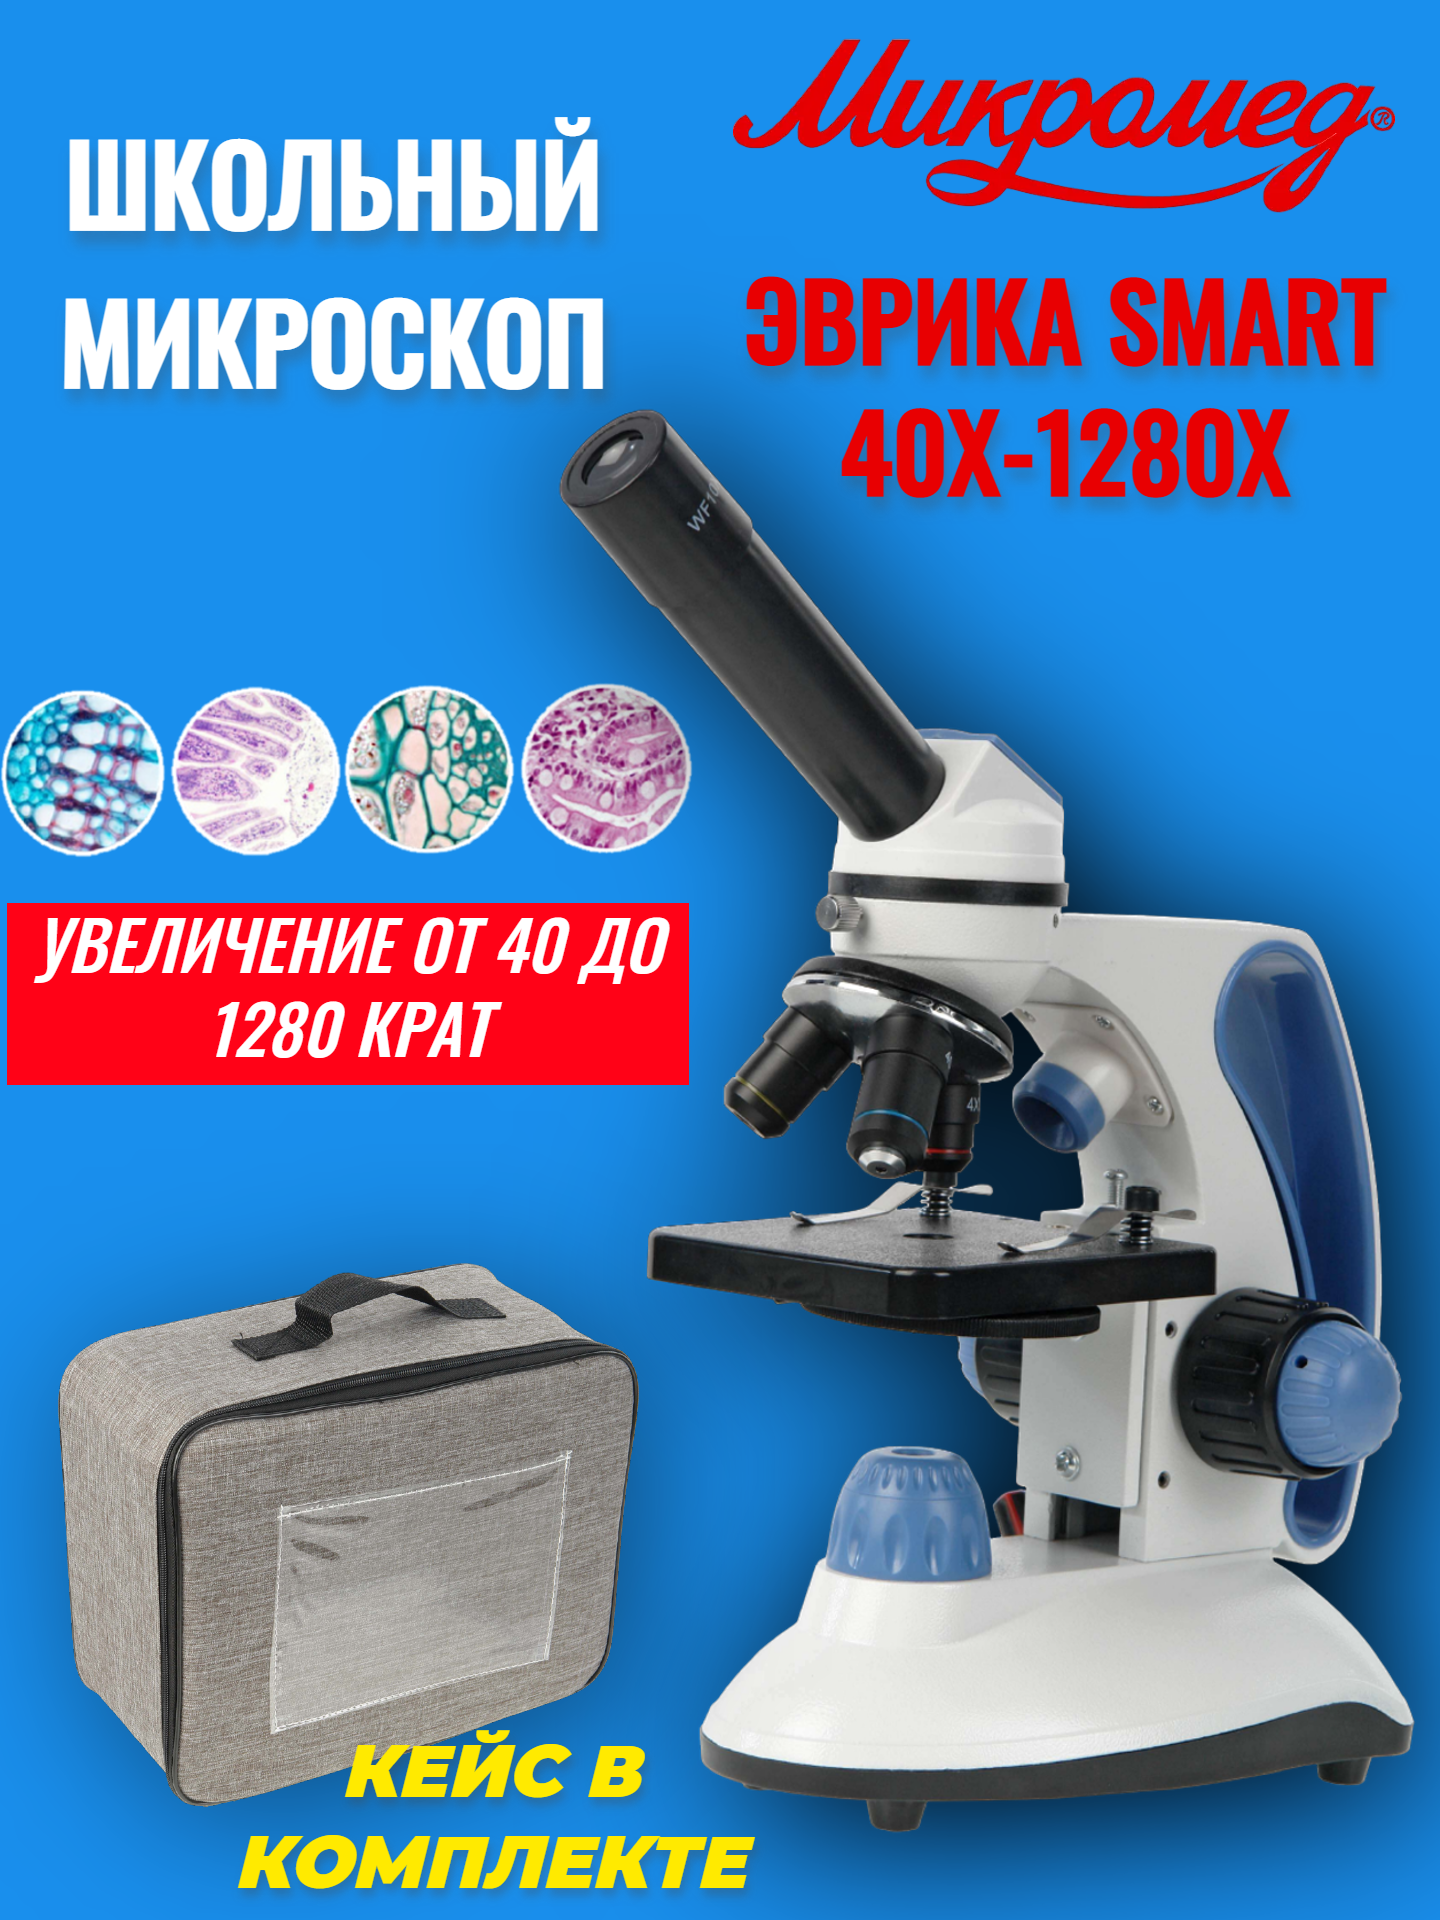 Купить микроскоп школьный учебный Микромед Эврика SMART 40х-1280х в текстильном кейсе, цены на Мегамаркет | Артикул: 600014066545